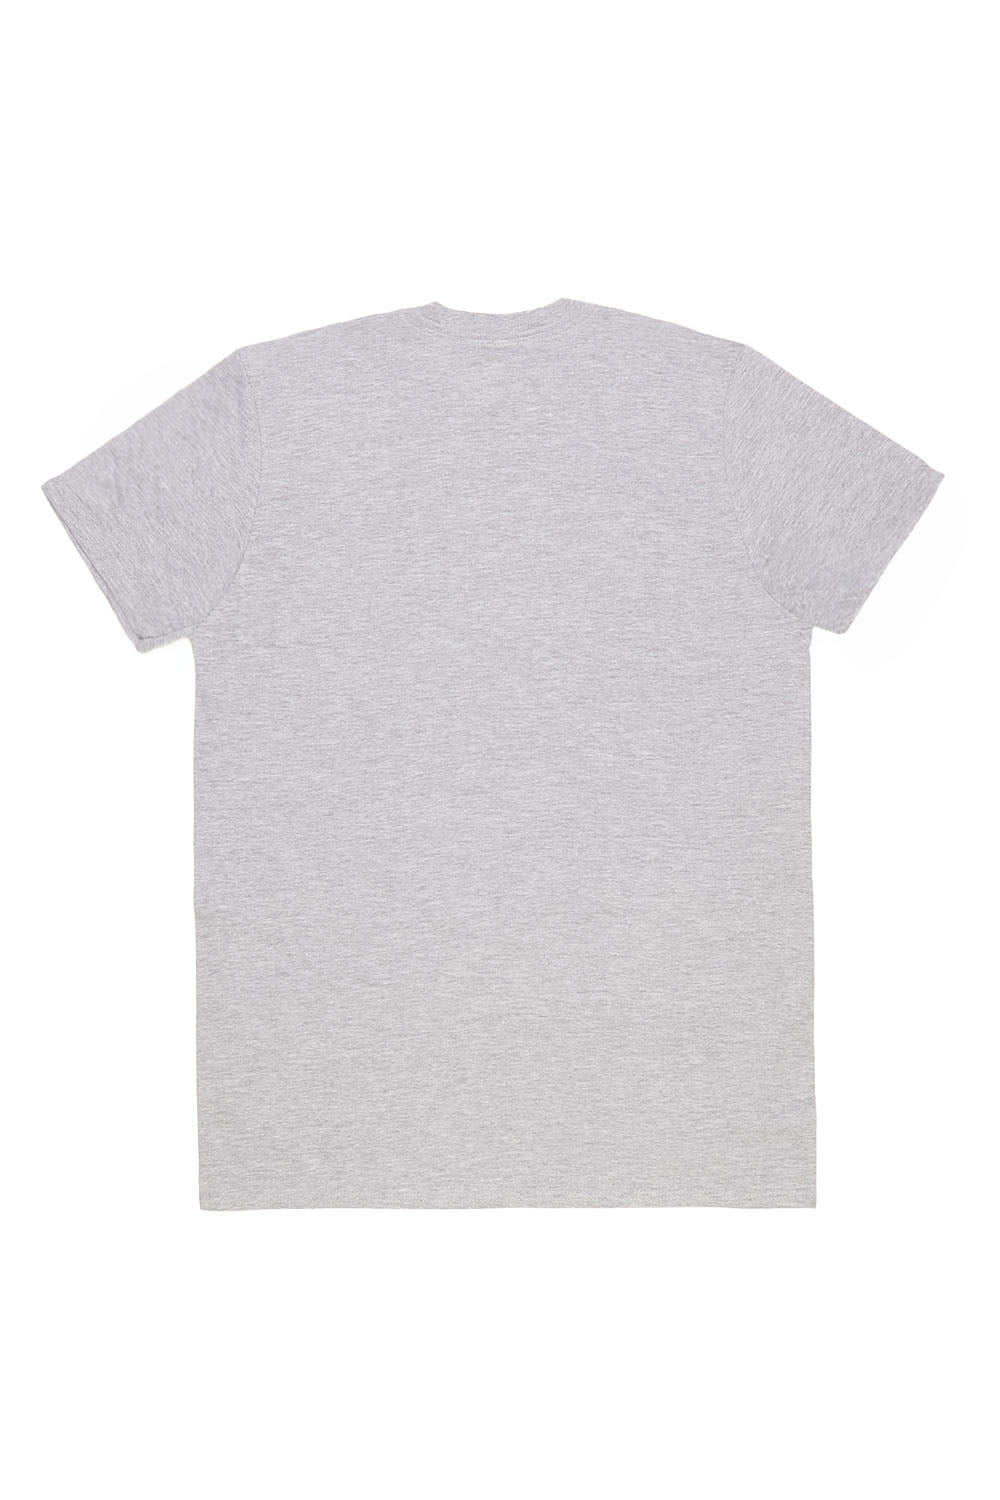 LA T-Shirt in Ash Grey (Custom Packs)